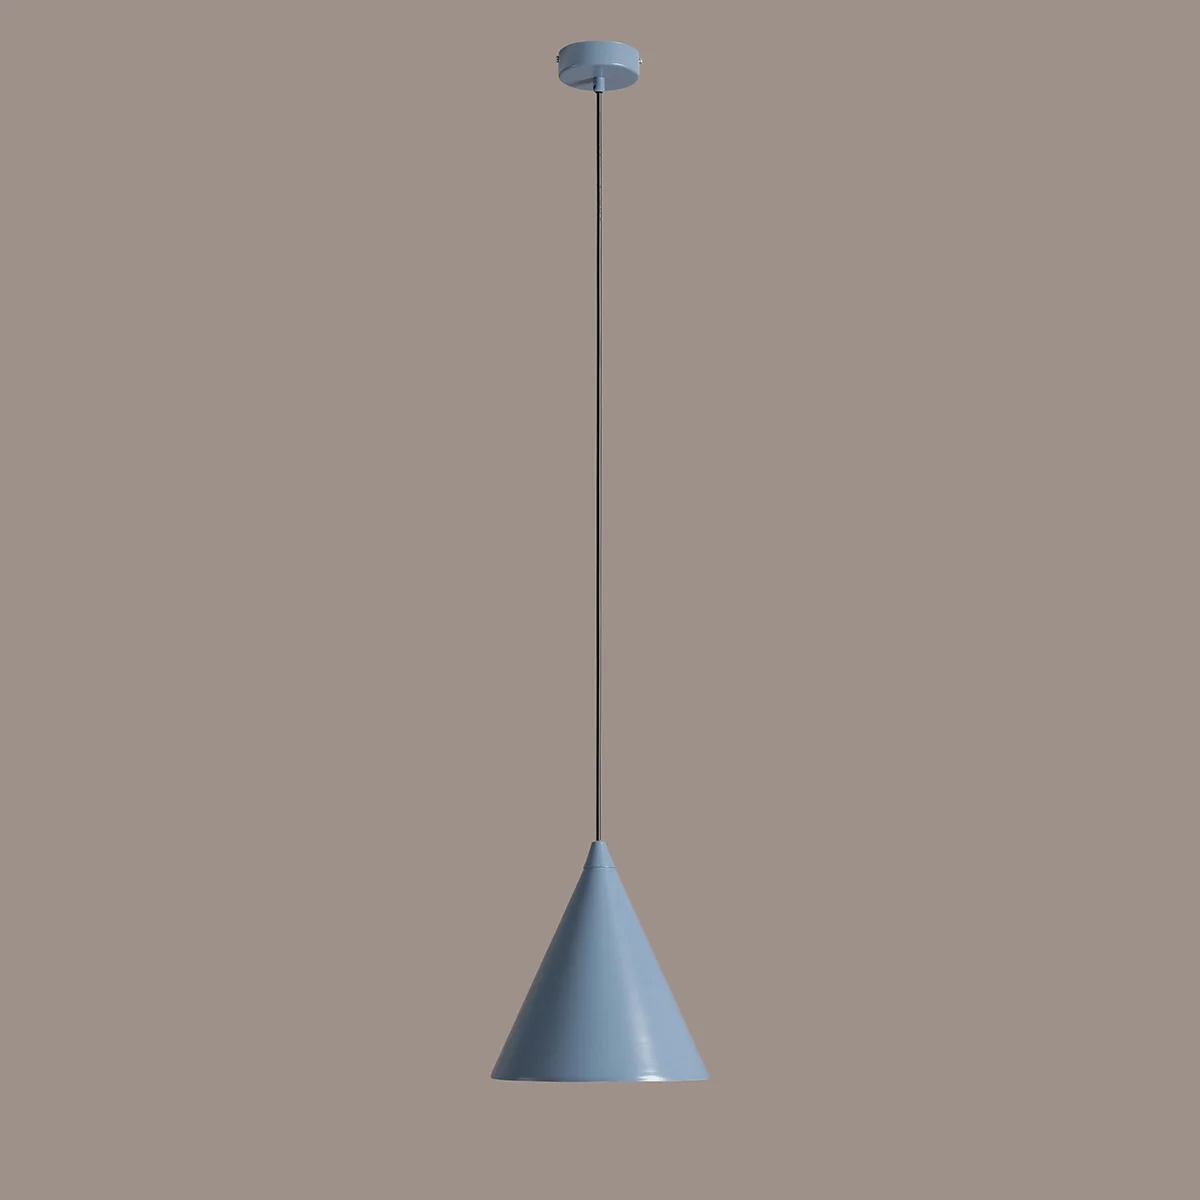 Metalowa lampa wisząca Form błękitna